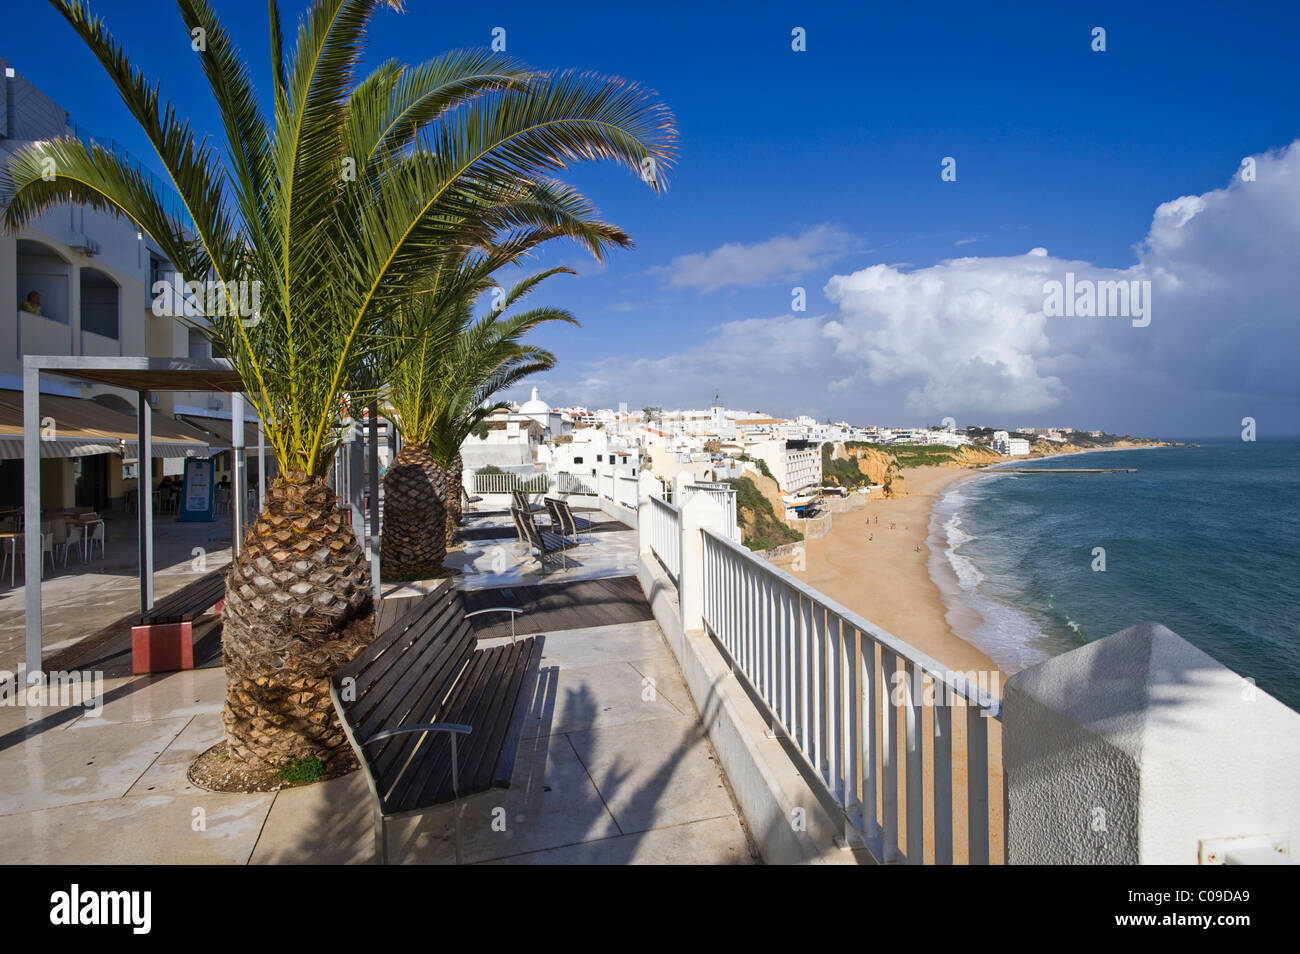 Cityscape at Area de Lazer, Albufeira, Algarve, Portugal, Europe Stock Photo